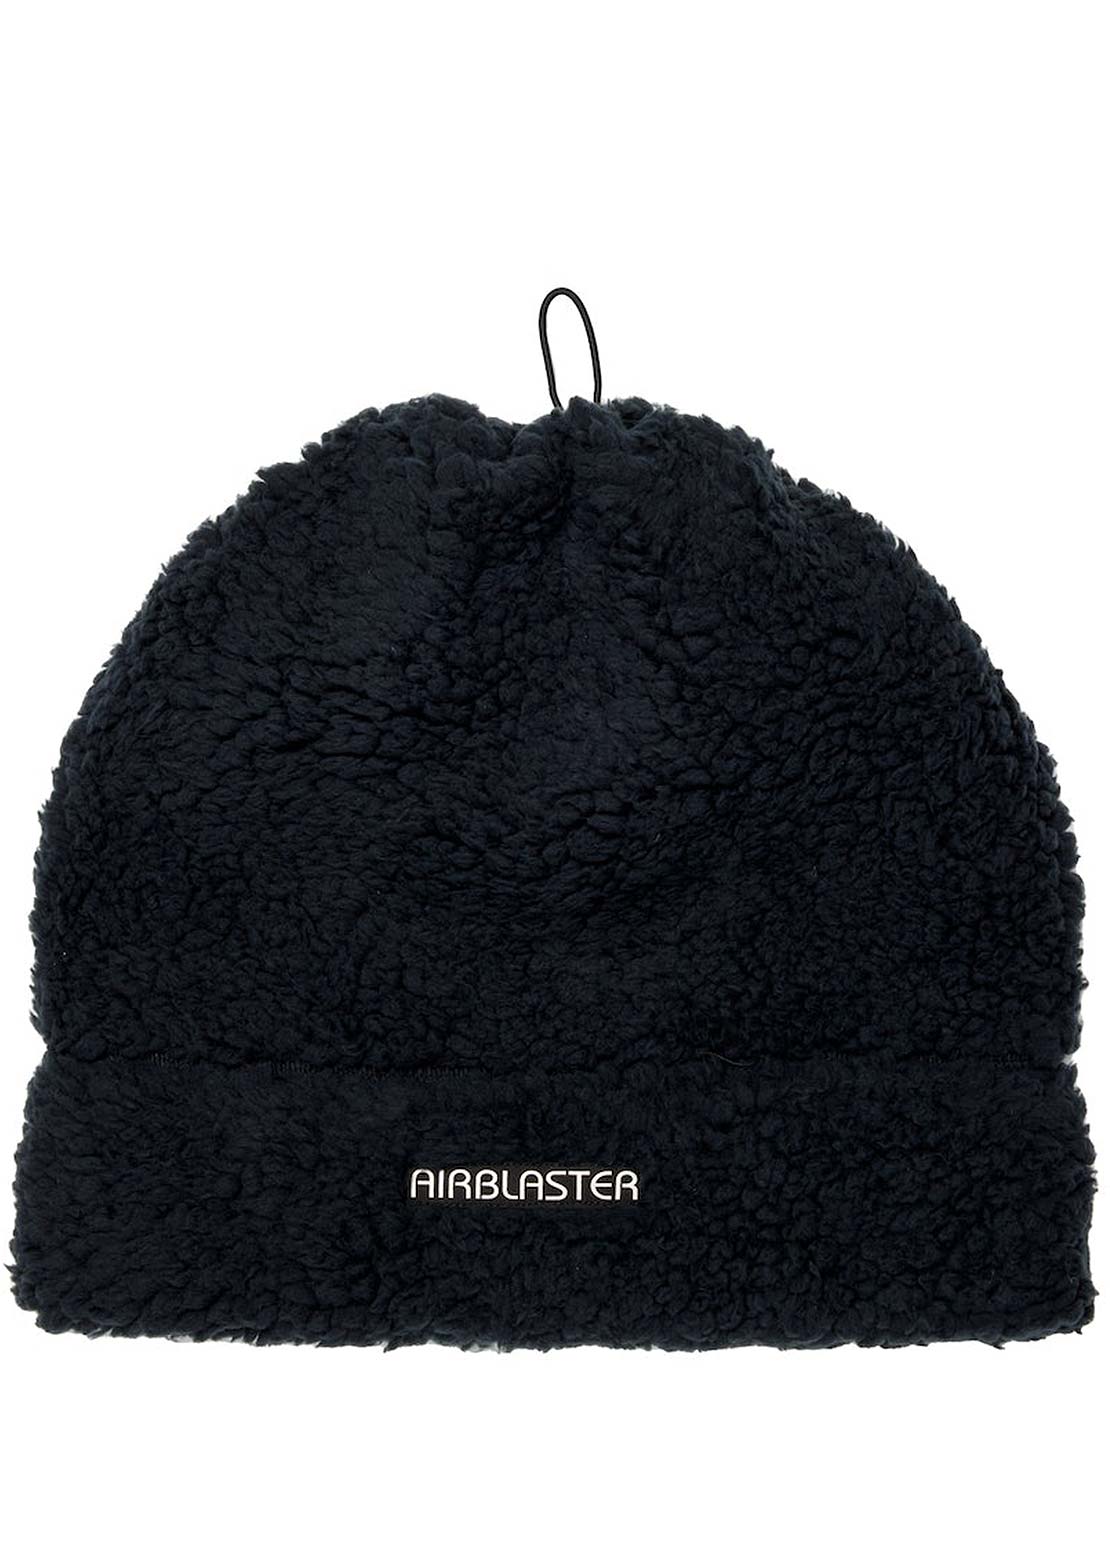 Airblaster Fleece Gaiter Hat Black